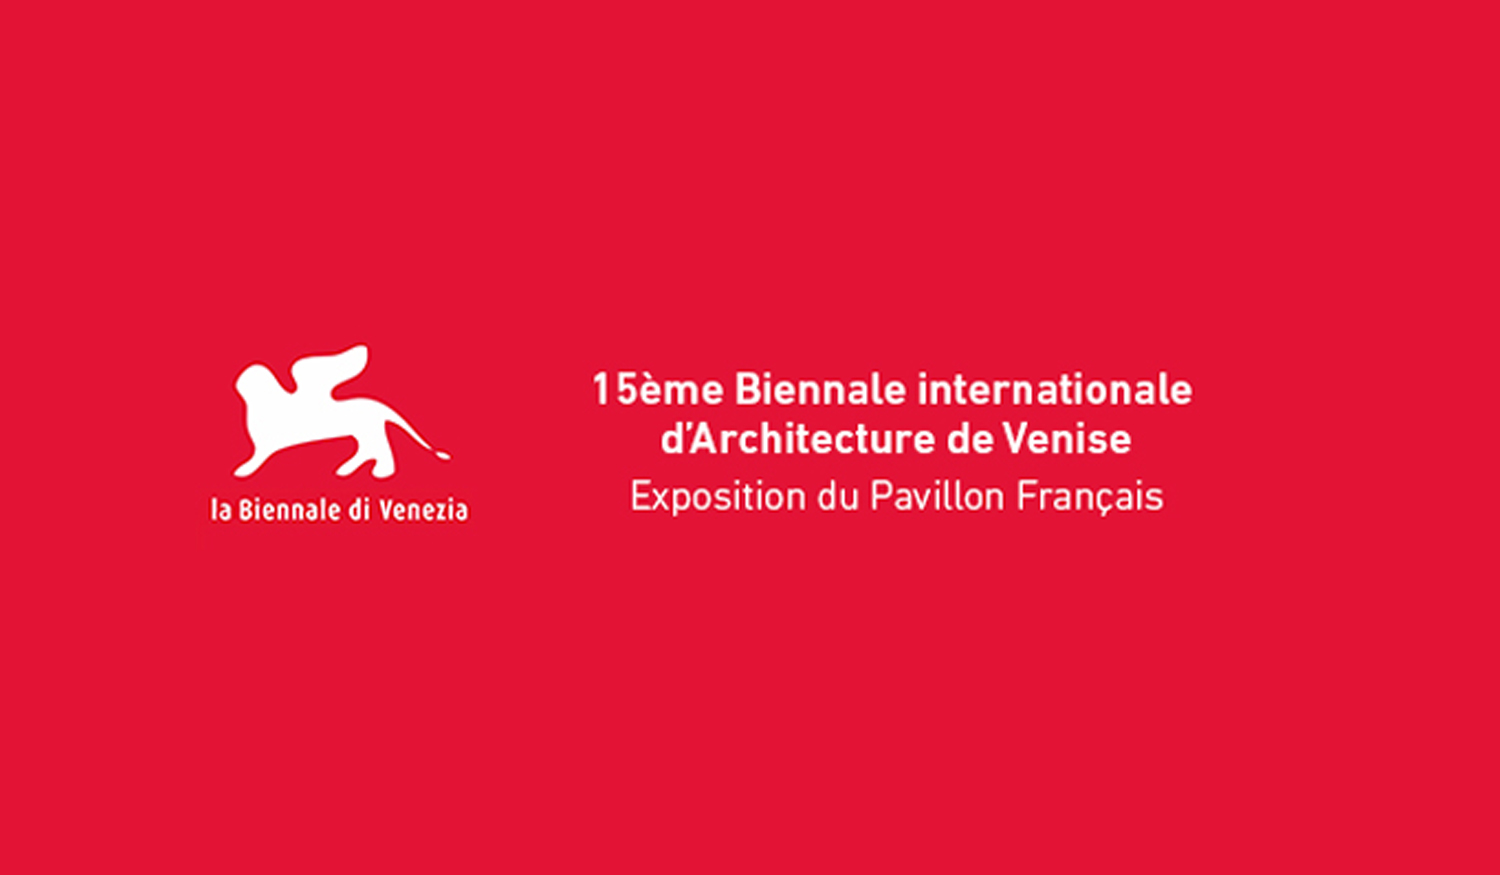 Le travail d’amàco exposé au Pavillon français de la Biennale de Venise